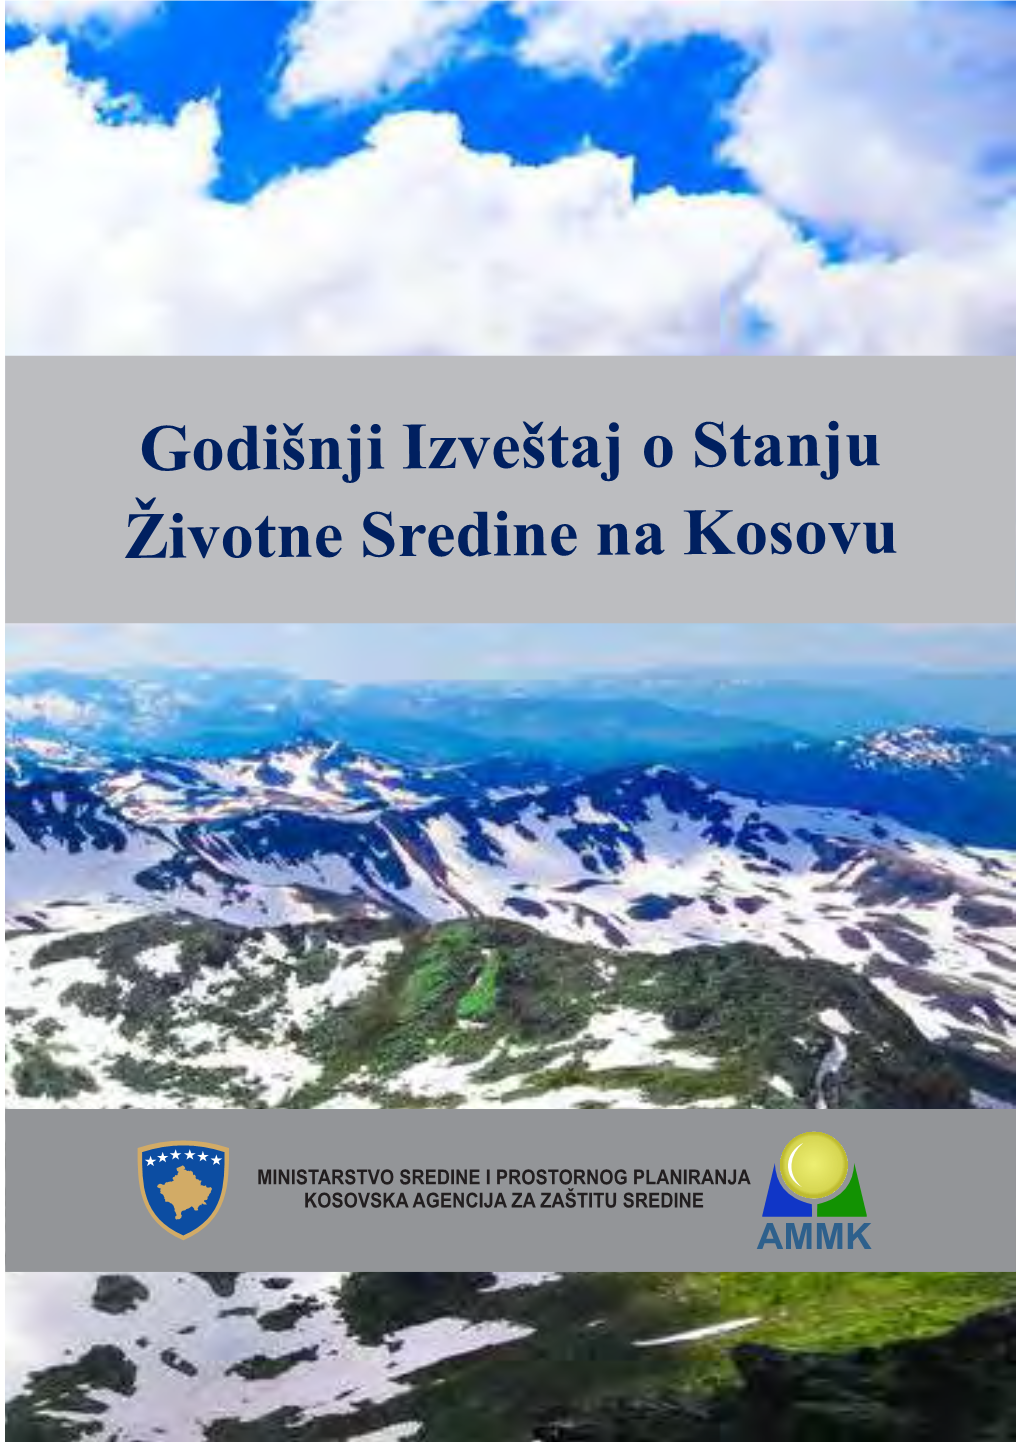 Godišnji Izveštaj O Stanju Životne Sredine Na Kosovu, 2015